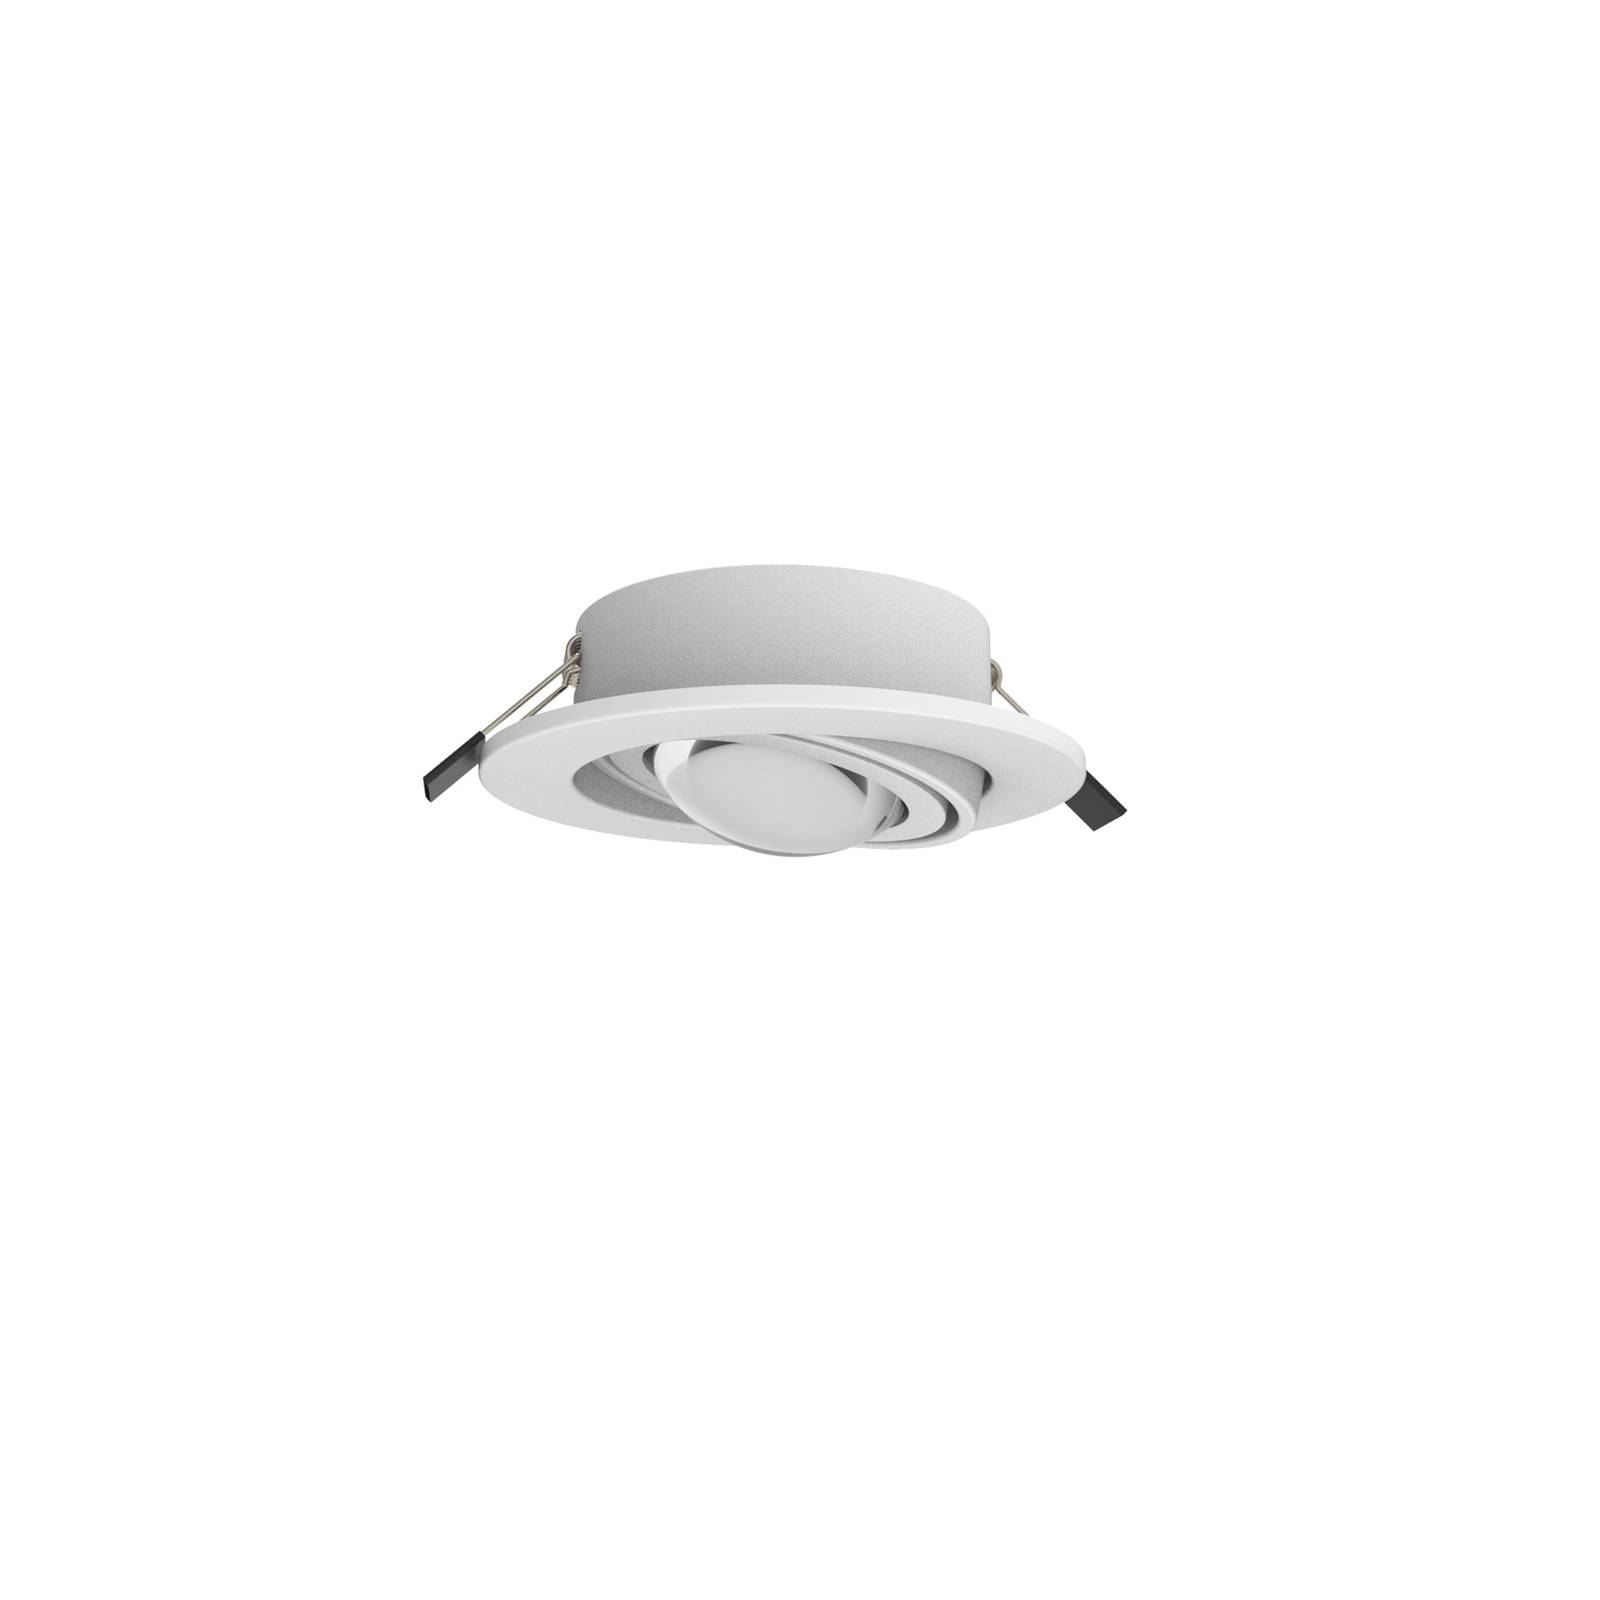 MEGATRON LED-es süllyesztett reflektor Planex Powerlens, 4,8 W, fehér